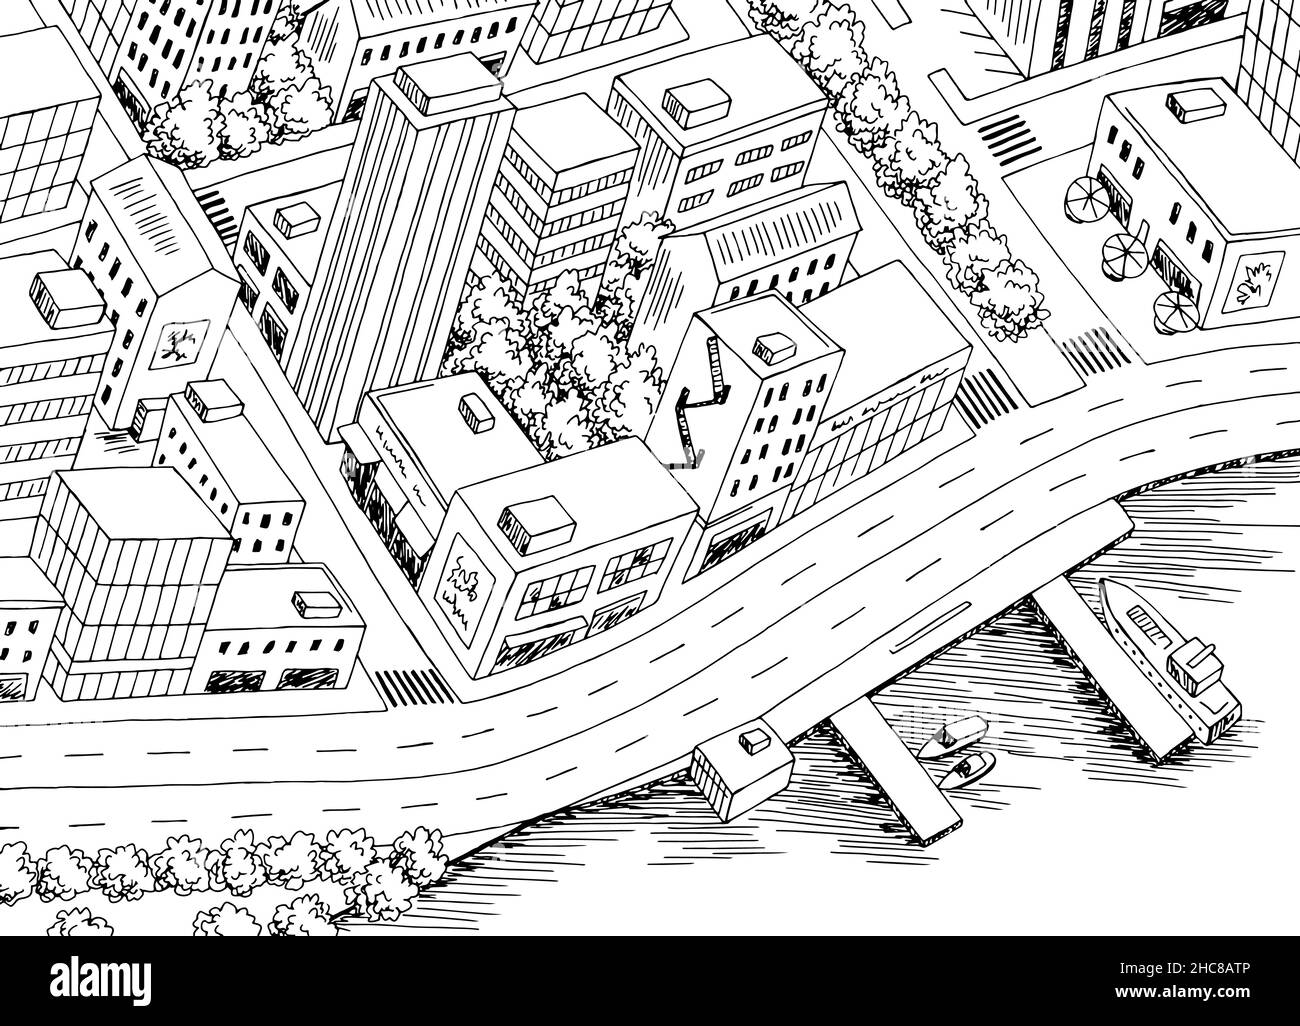 City Draufsicht von oben Luftüberfahrt Straßengrafik schwarz Vektor der weißen Skizzendarstellung Stock Vektor